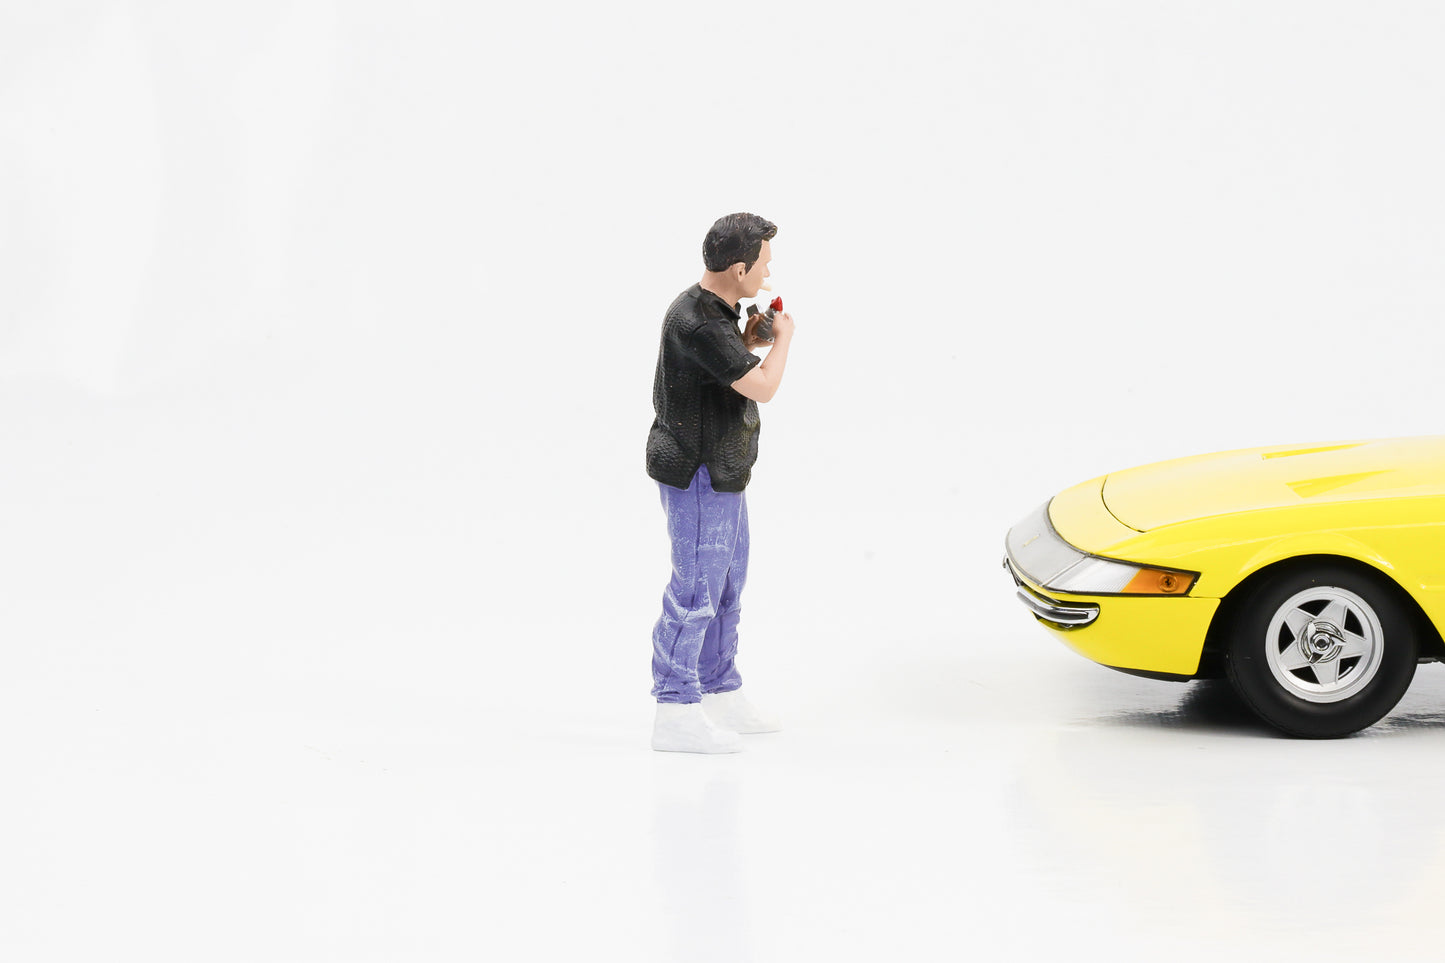 1:18 Figur Car Meet 1 Matt Zigarette raucht American Diorama Figuren VI